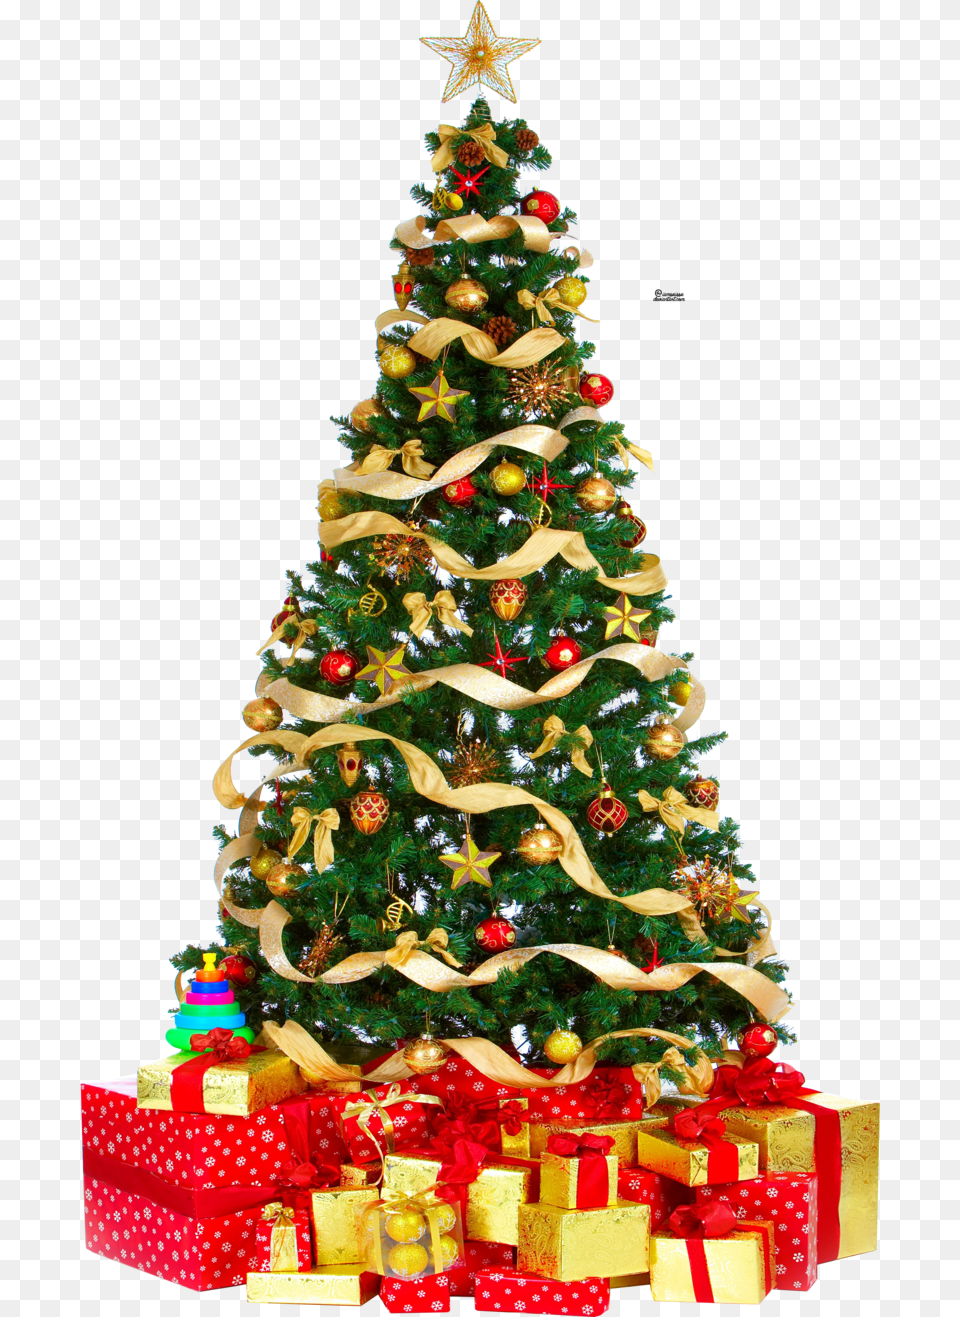 Christmas Tree Download Christmas Tree Download, Christmas Decorations, Festival, Christmas Tree, Birthday Cake Free Png